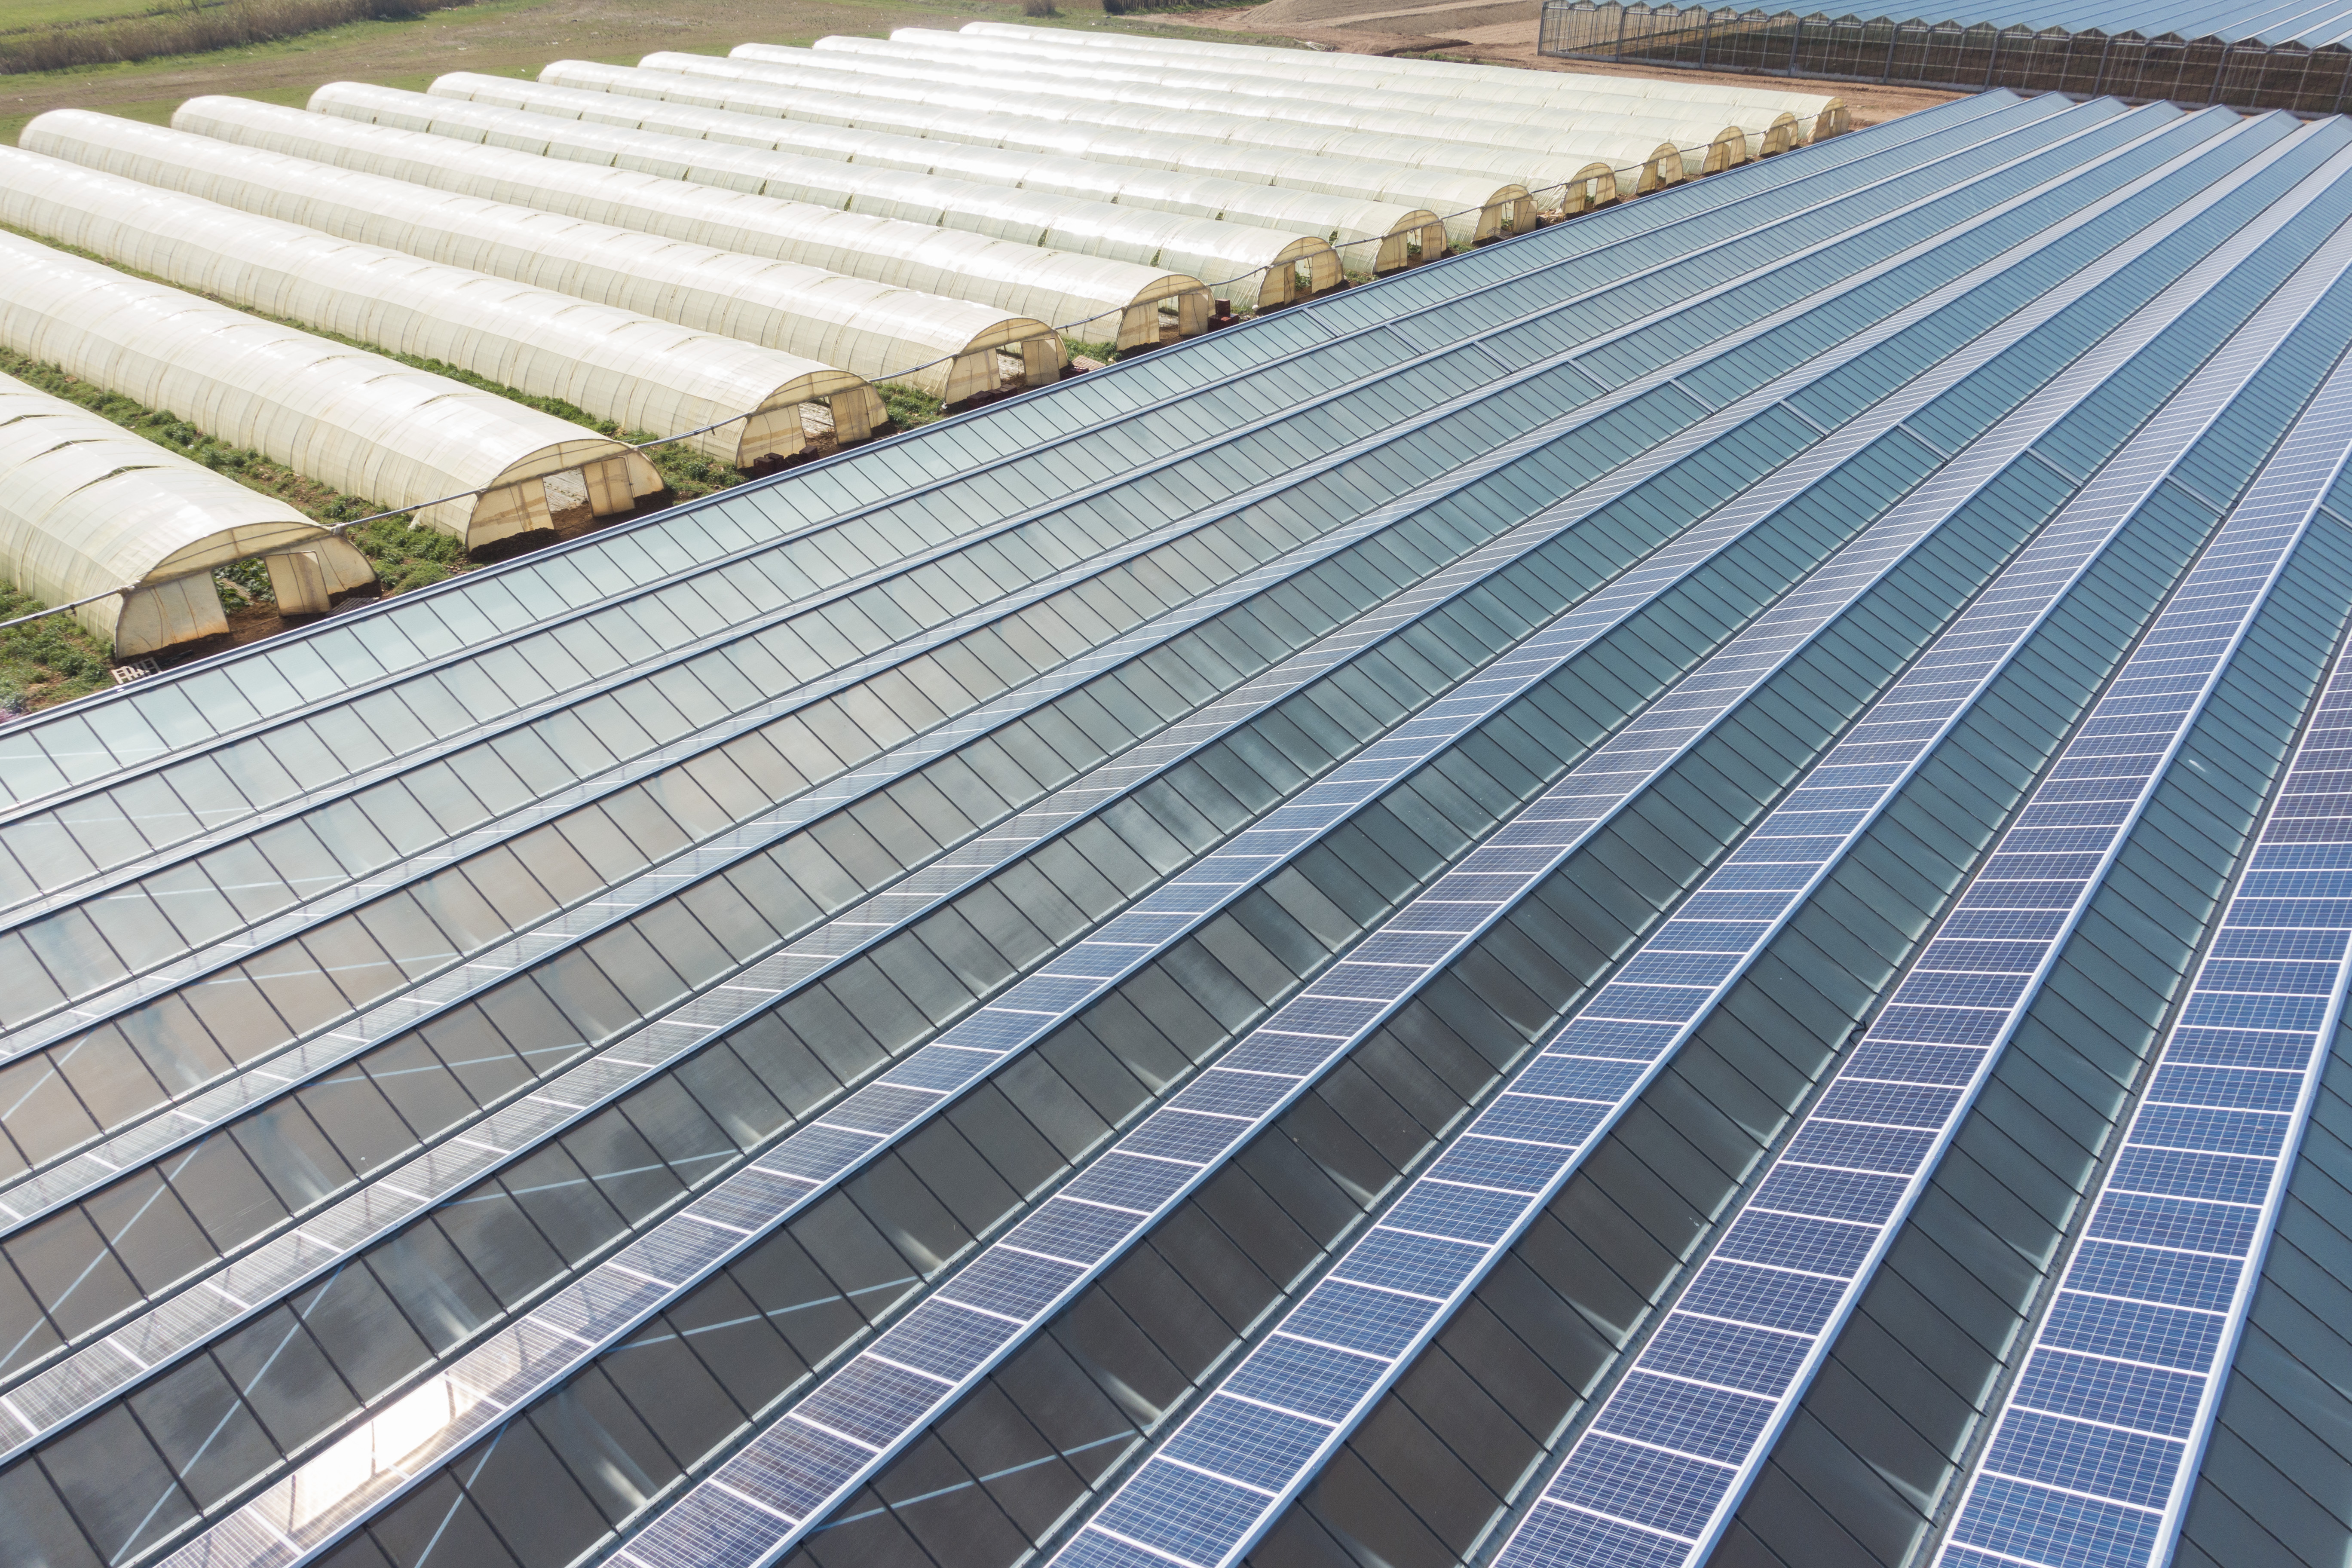 Solaranlagen auf Gewächshäuser produzieren grünen Strom, schützen die Pflanzen vor dem Wetter und optimieren die Arbeitsbedingungen.